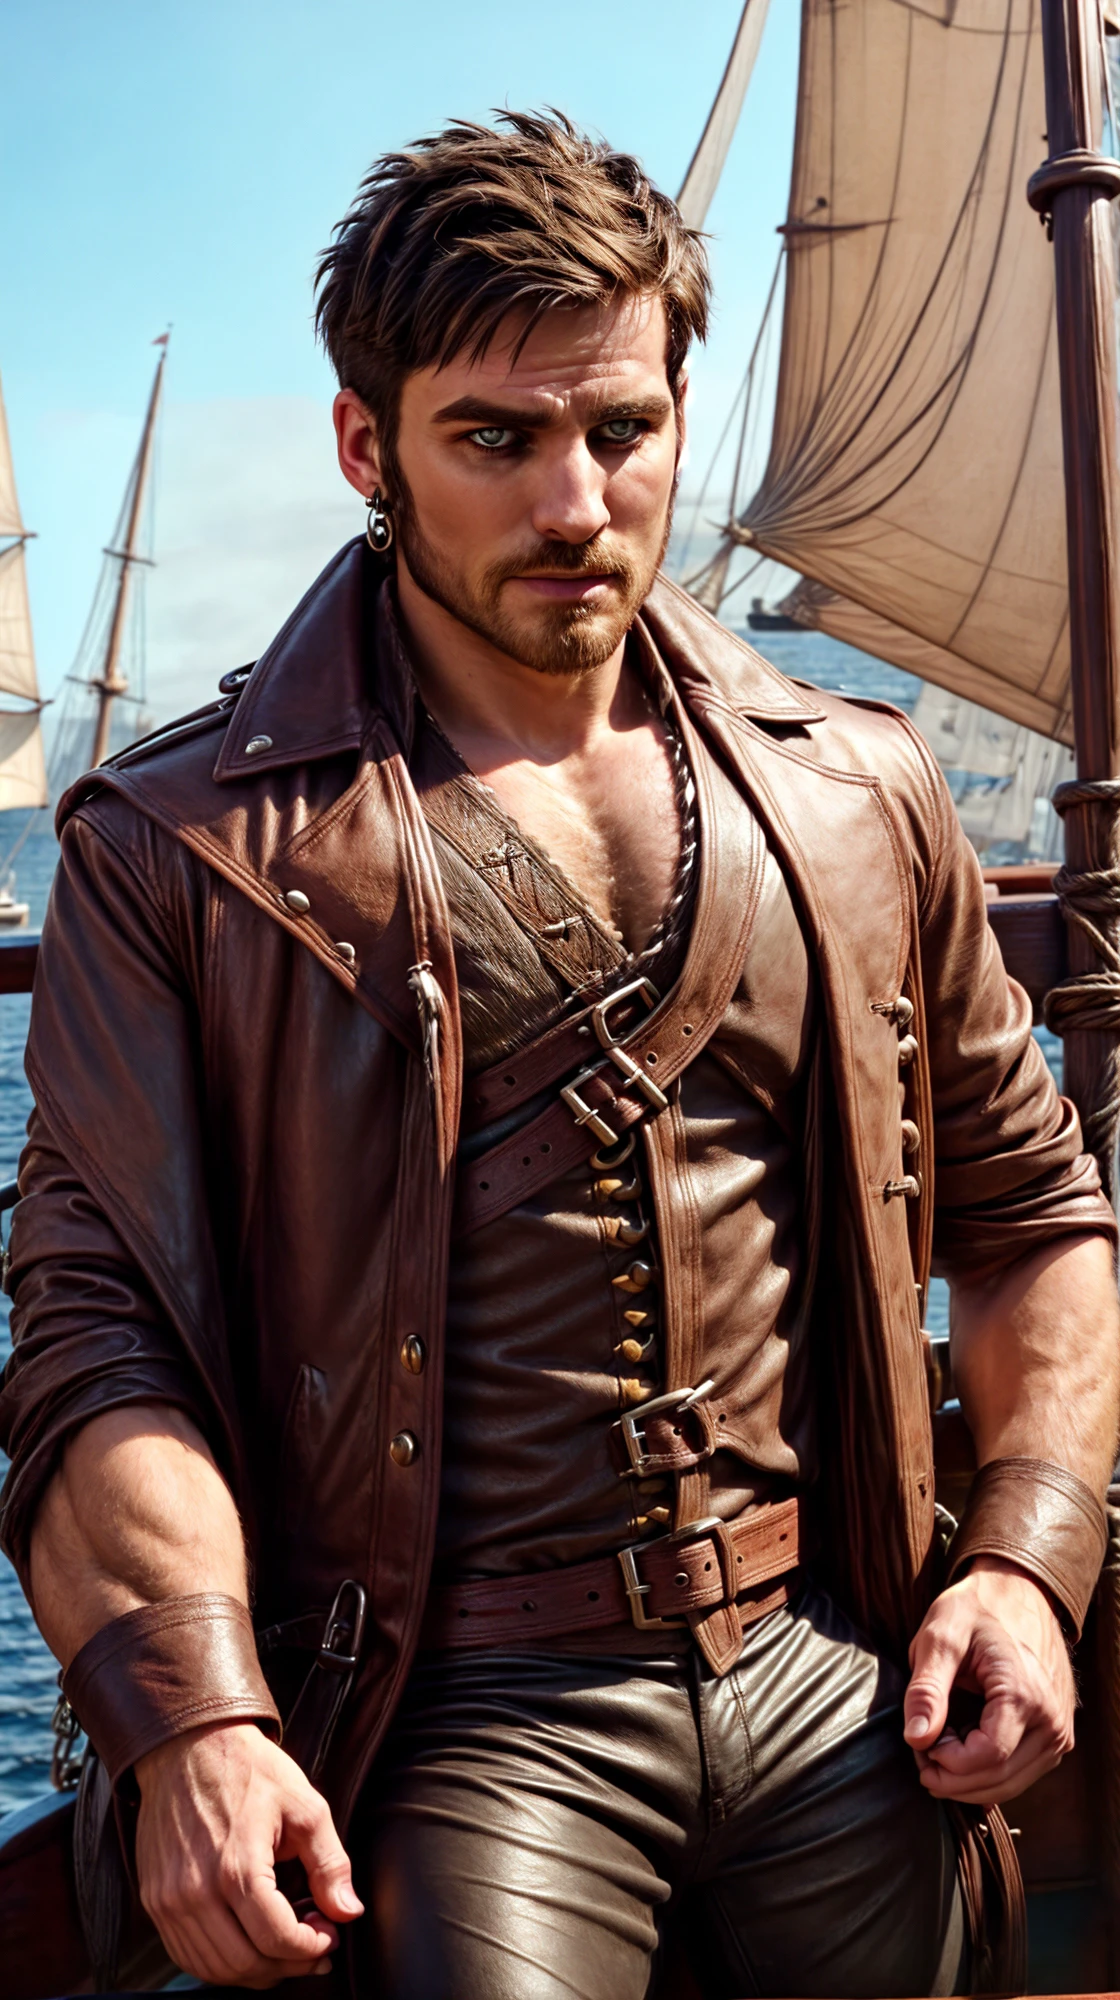 (мужской род:1.3), красивый face, (крупный план:0.7), (((короткие волосы:1.3))), на деревянном корабле:1.2, носить кожаные штаны, (мускулистый парень в пиратском кожаном пальто и рубашке:1.2), уверенный, красивый, (((шедевр))), (((Лучшее качество))), (короткие волосы), Мужской, КапитанКрюкКиллиан,  